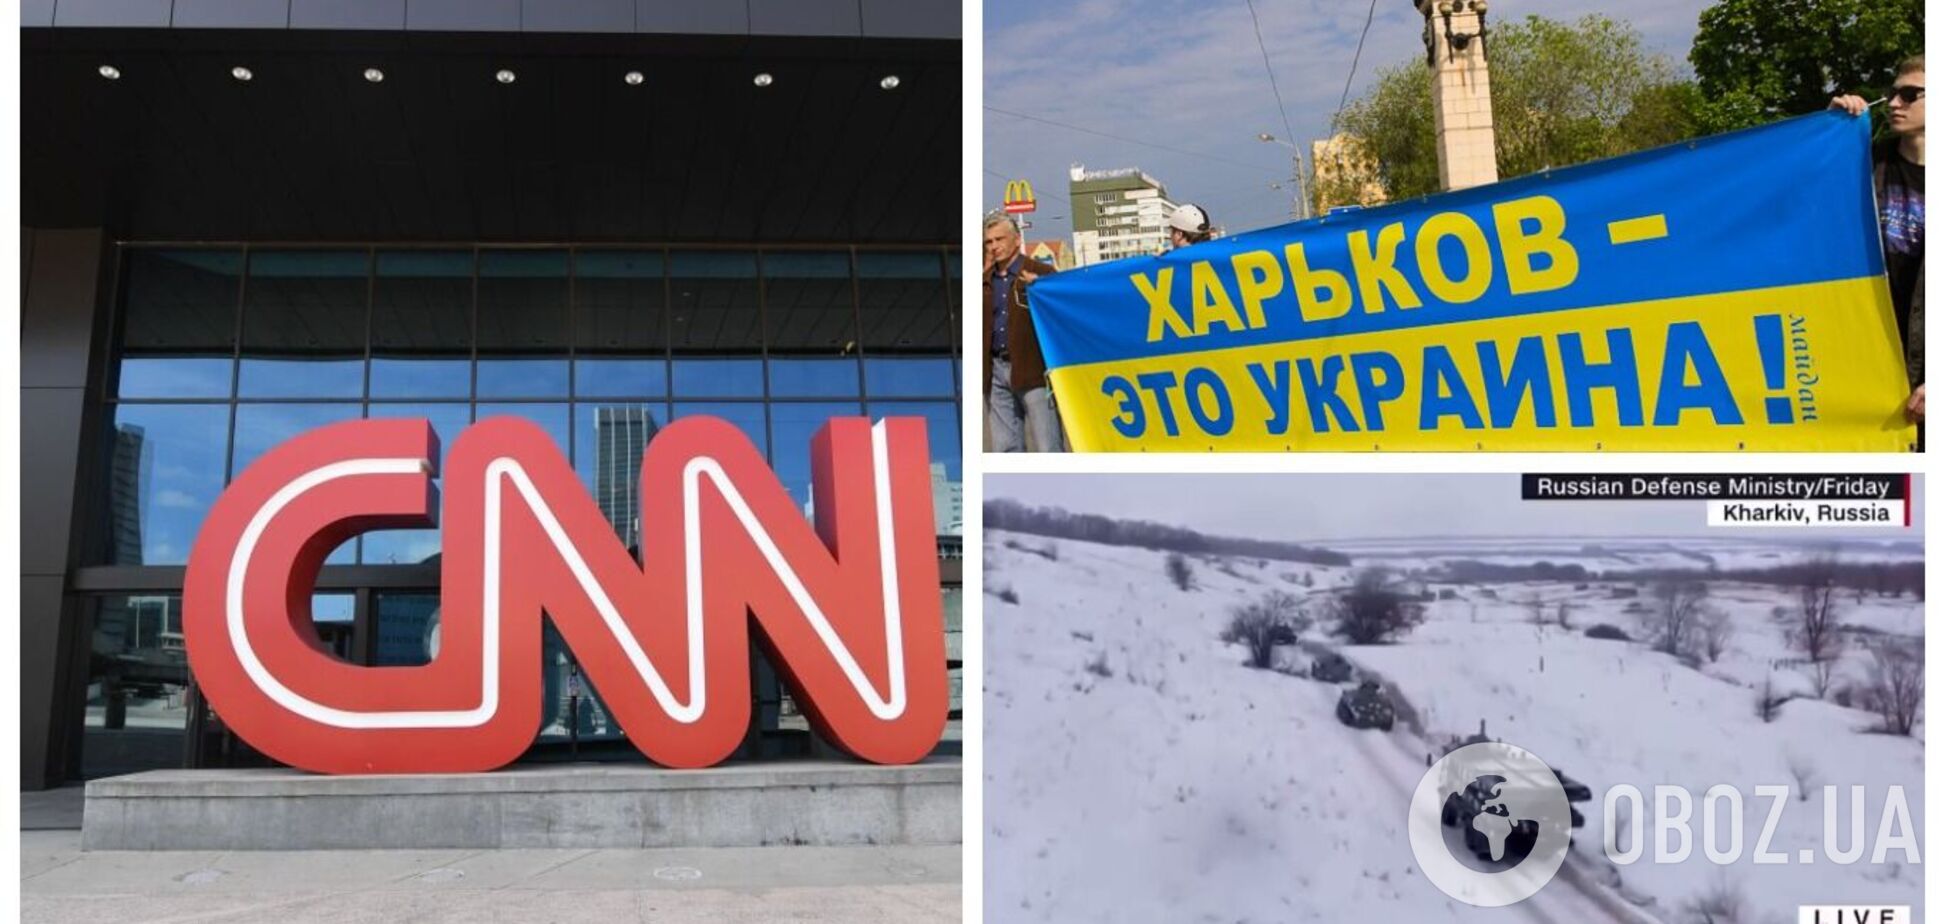 Американский телеканал CNN 'отдал' Харьков России и попал в скандал. Видео